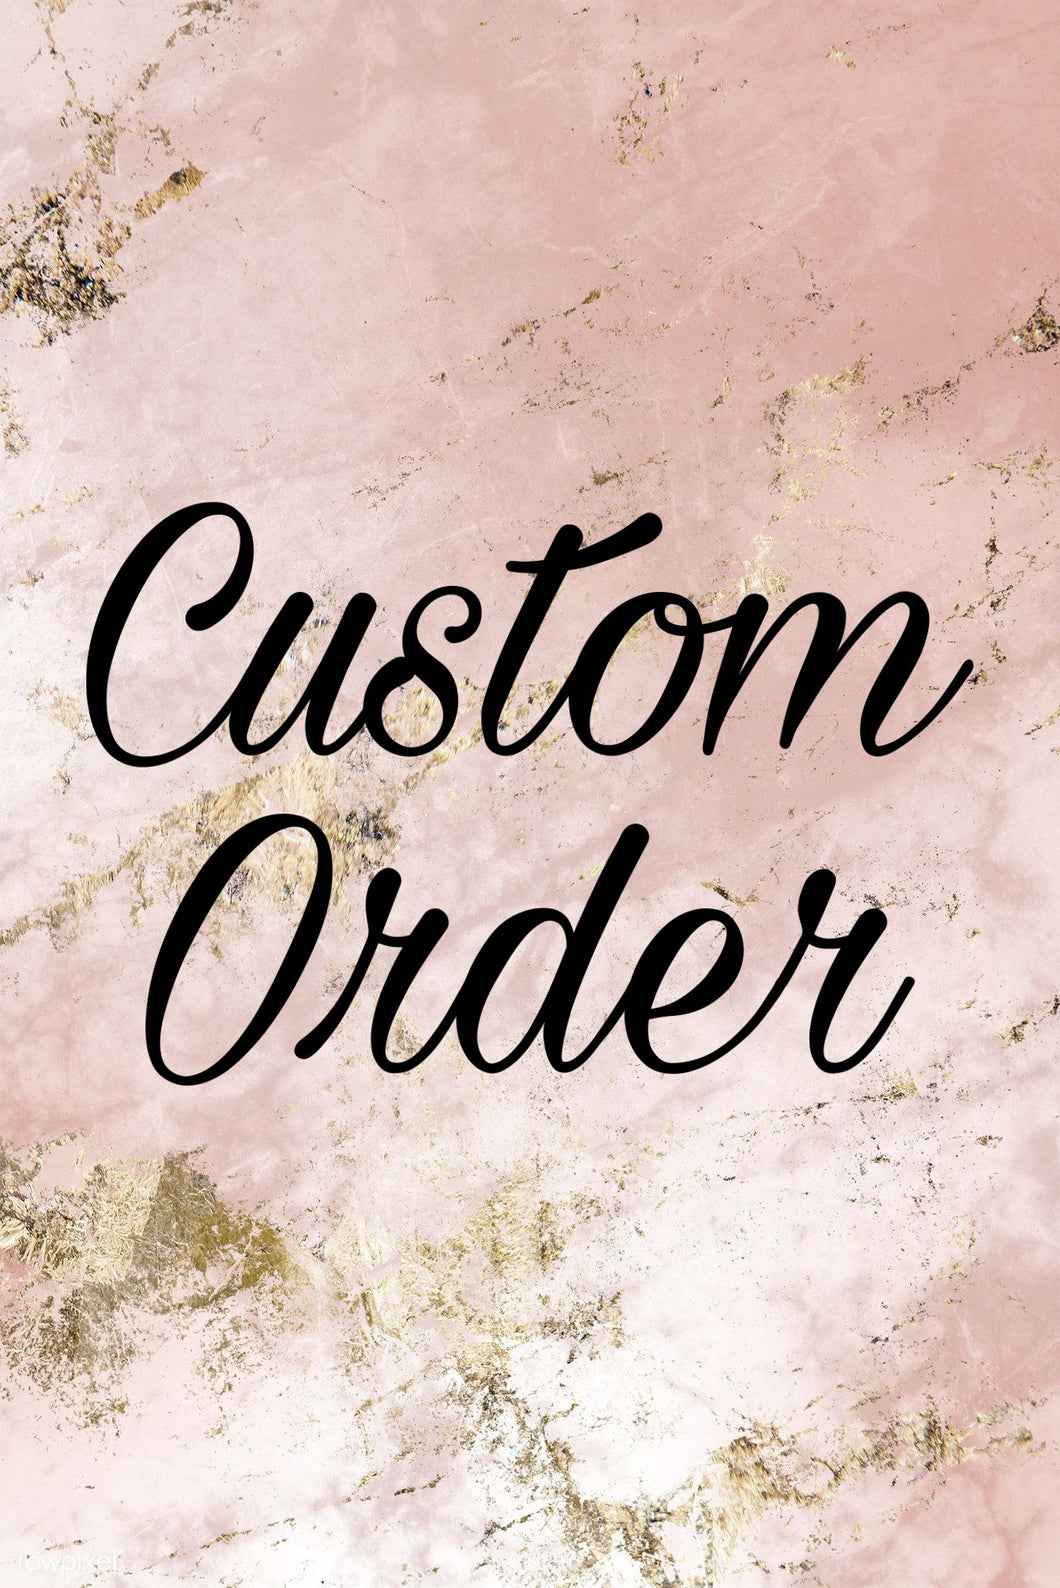 Chelsey’s custom order